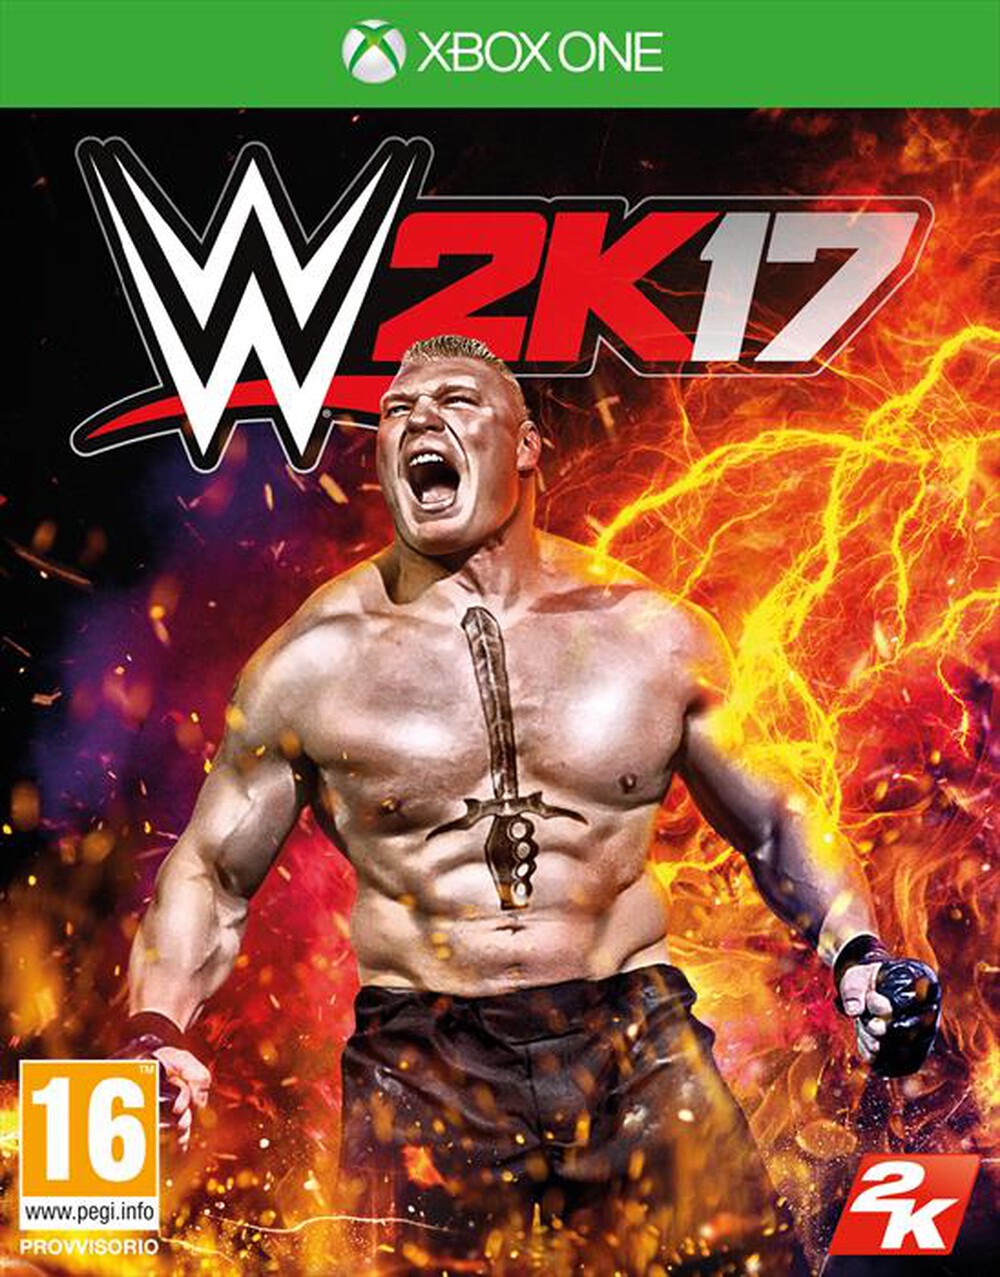 "TAKE TWO - WWE 2K17 Xbox One"